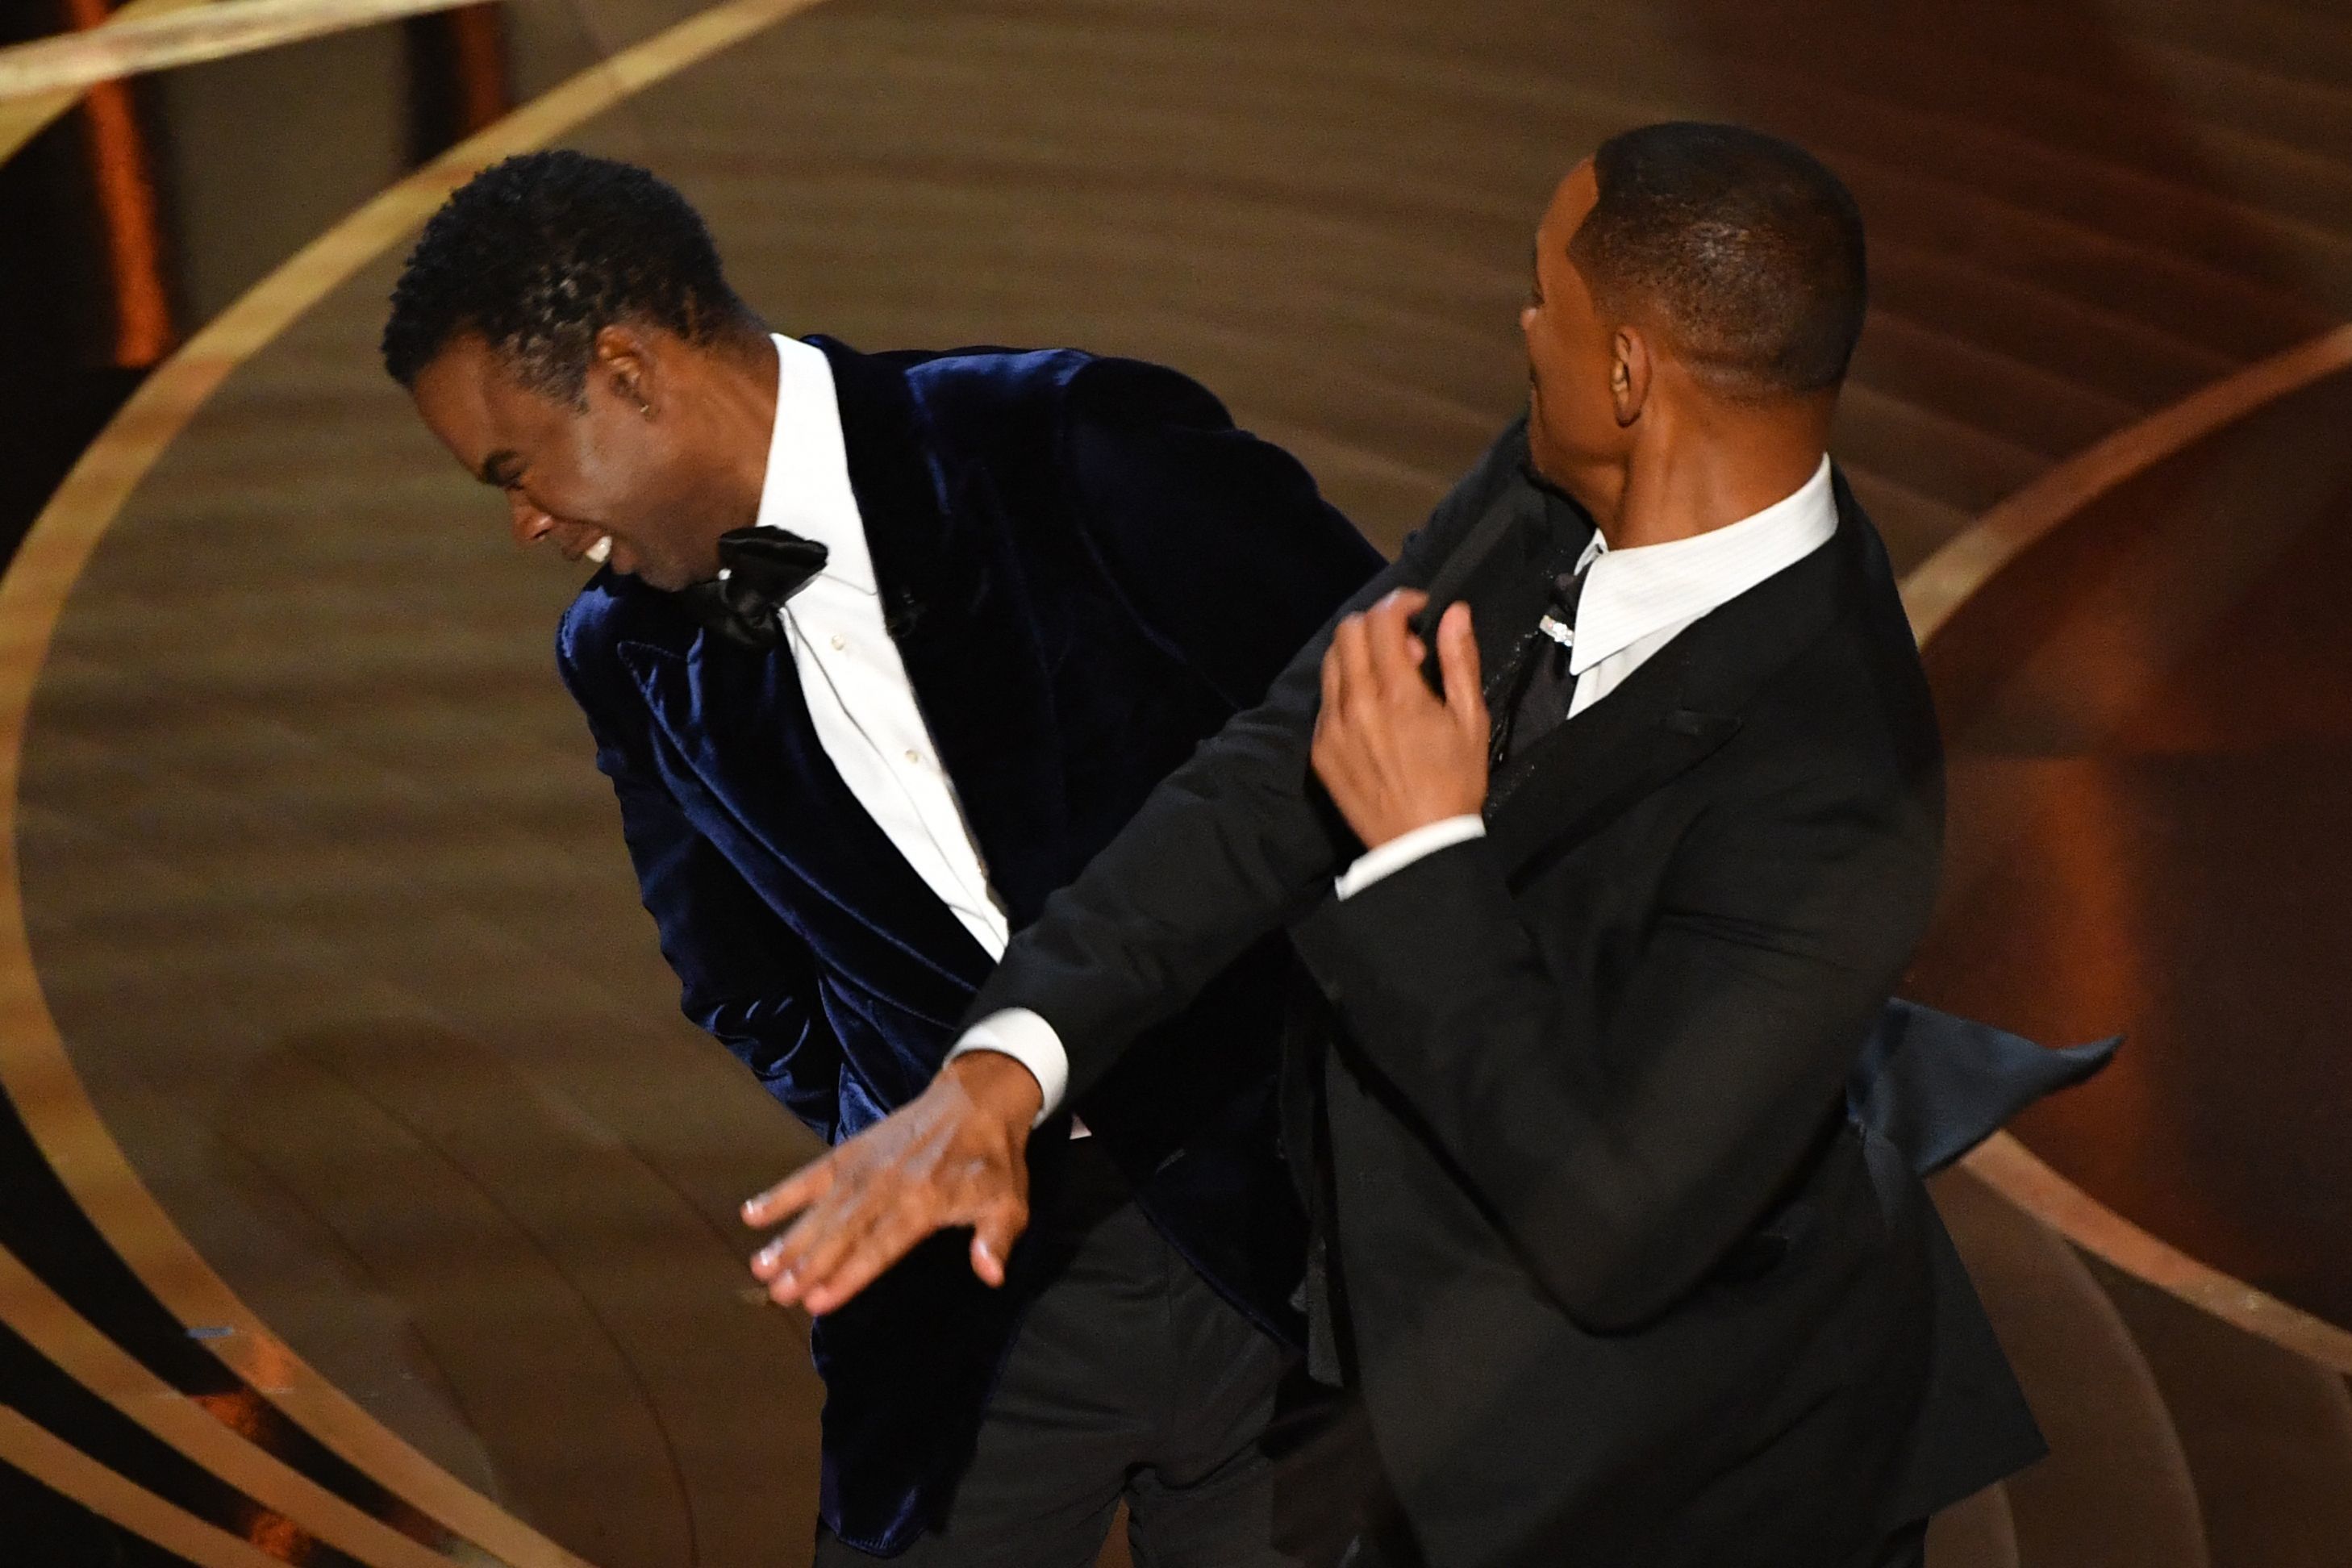 La hist�rica bofetada de Will Smith a Chris Rock en los Oscar.